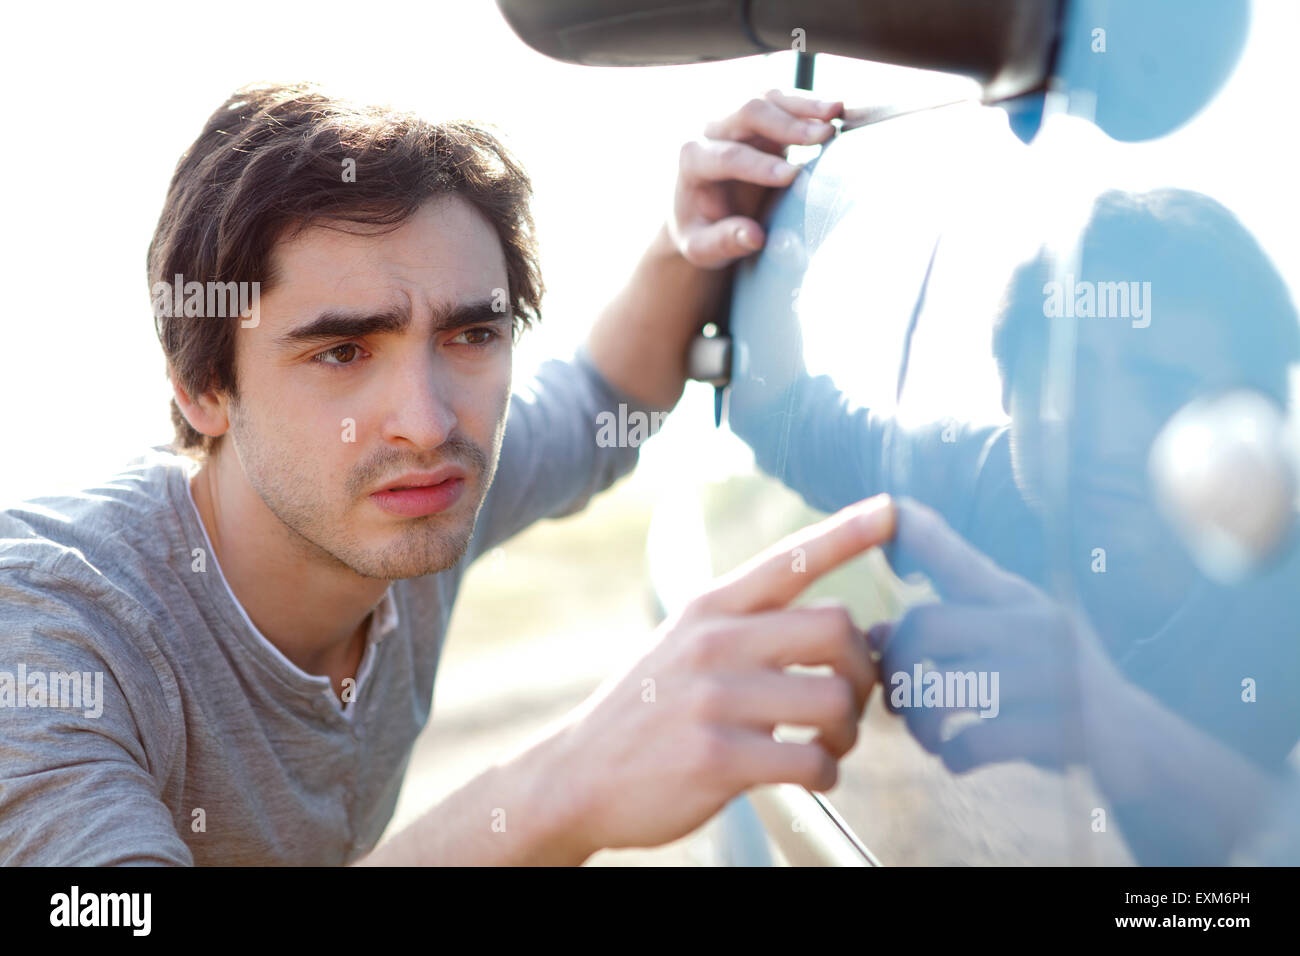 Vue d'un jeune homme à rayures sur sa voiture Banque D'Images